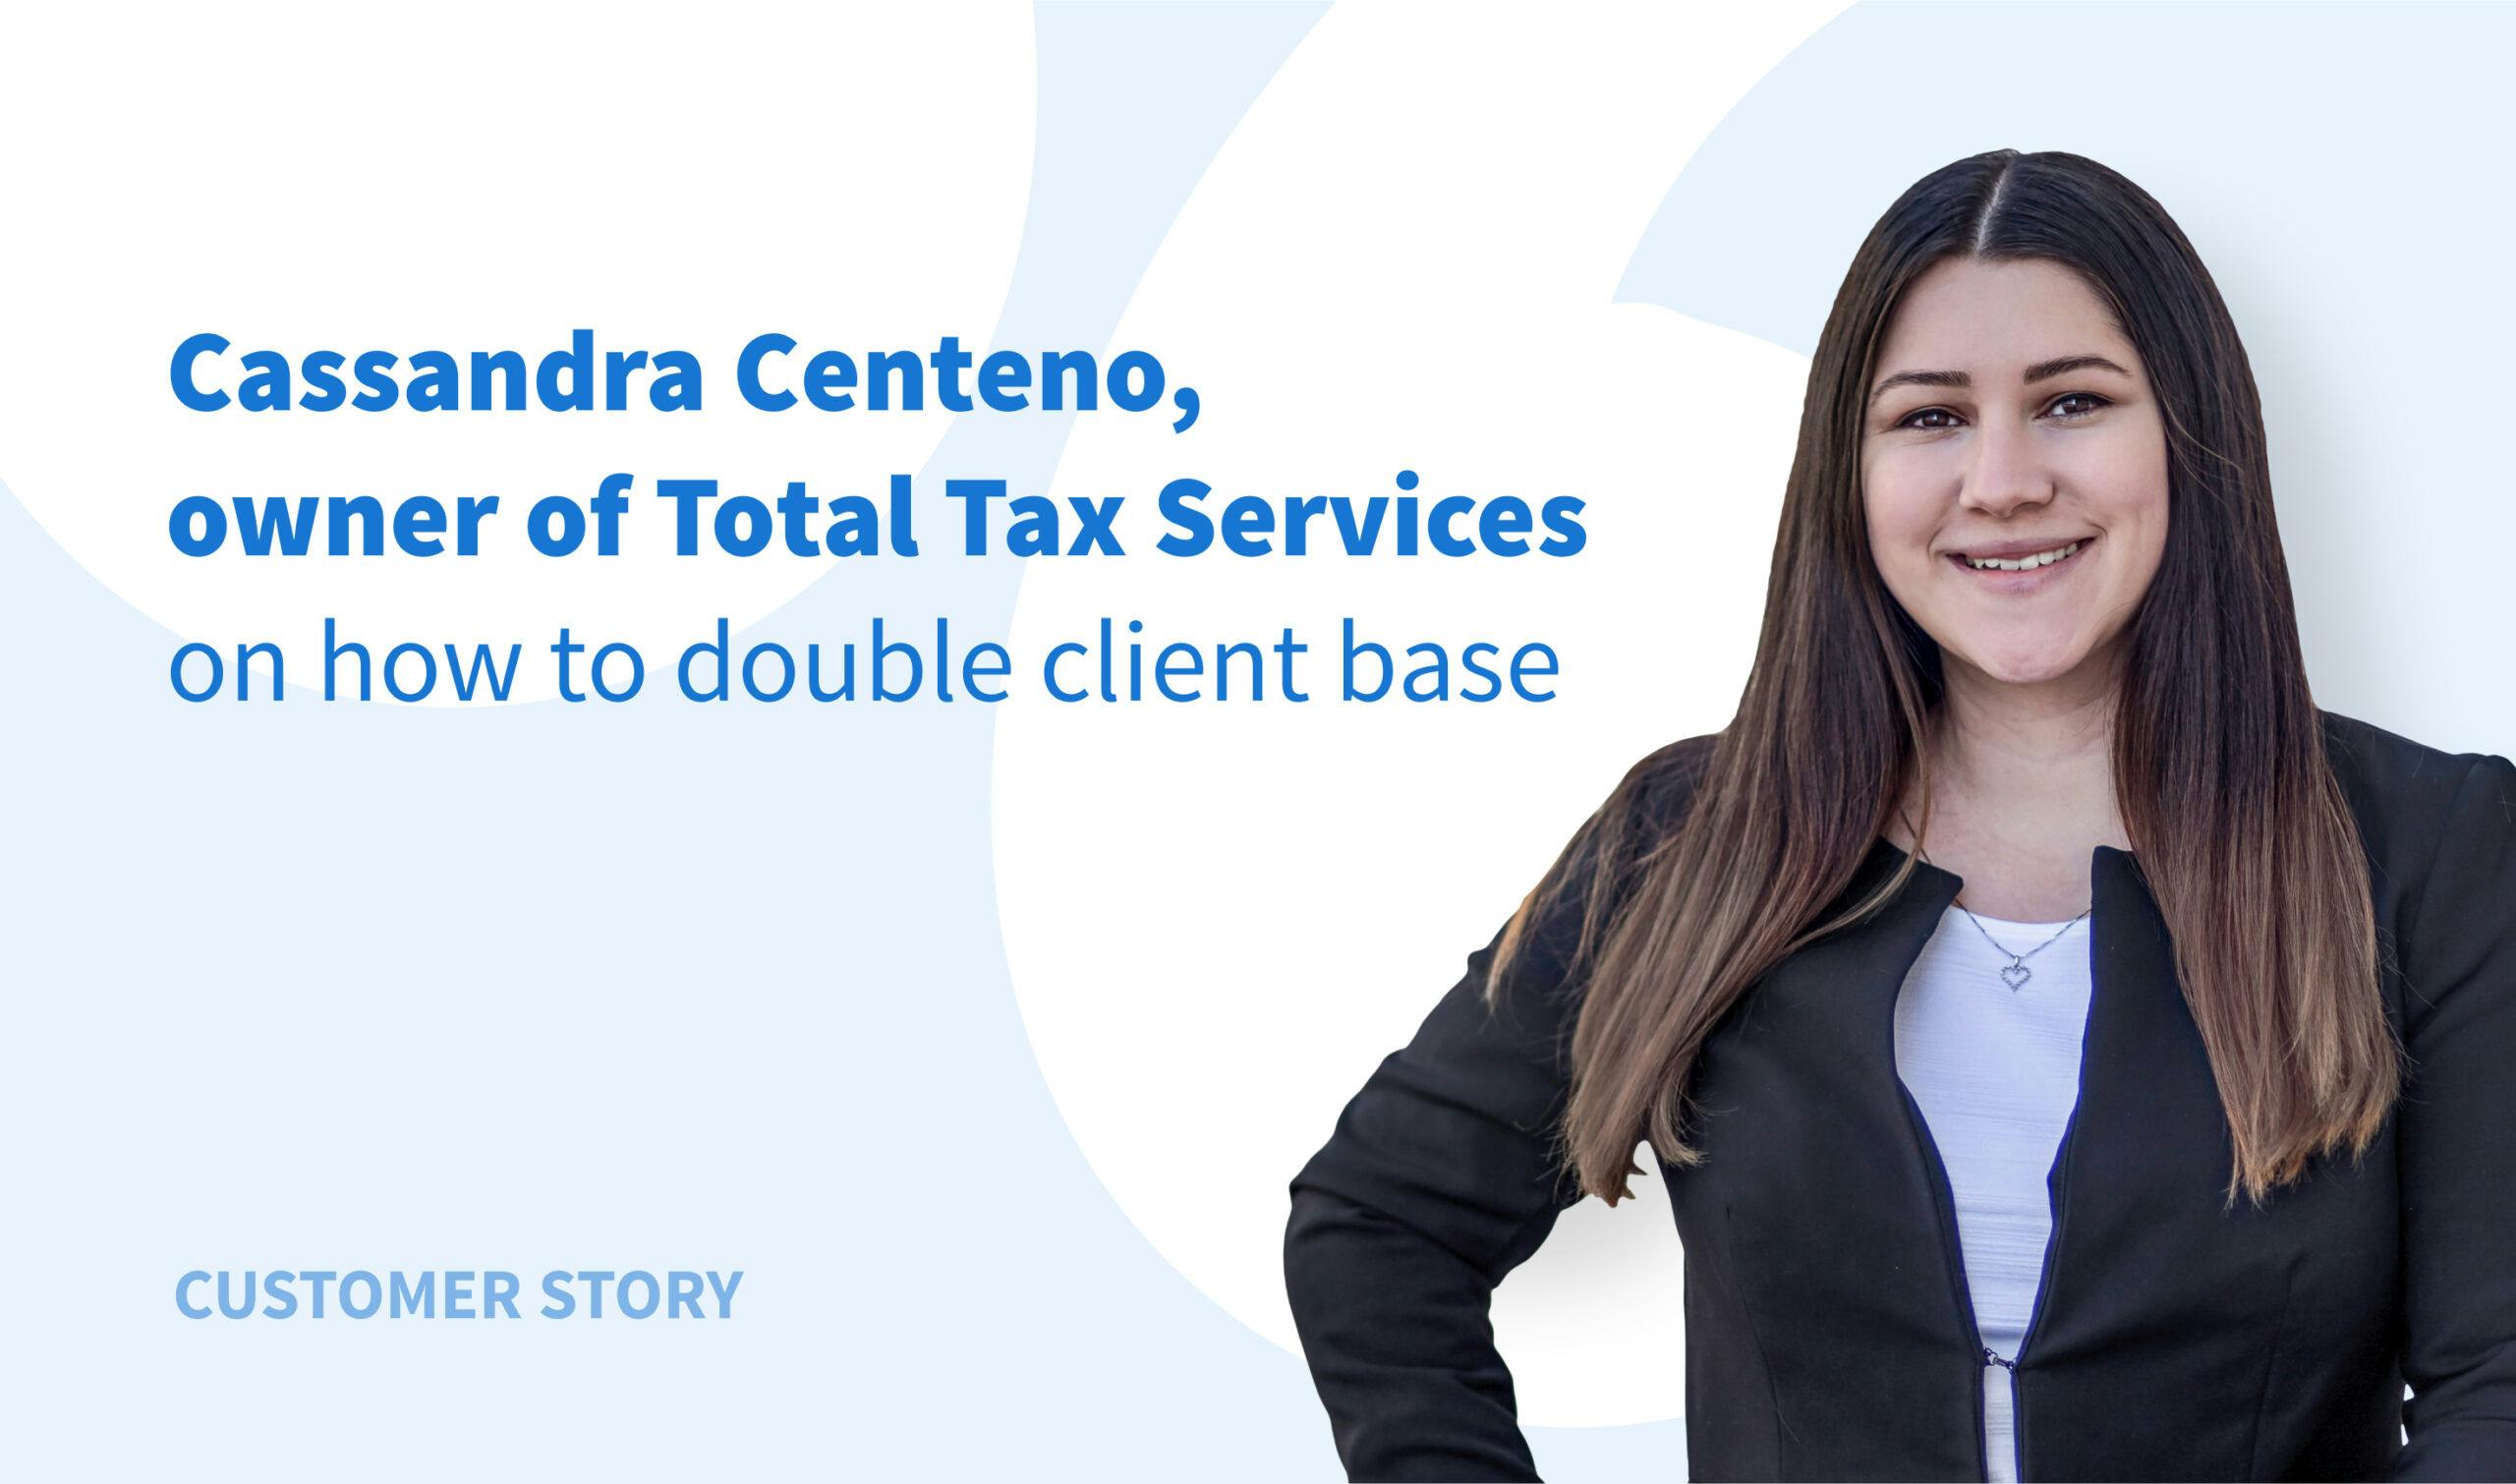 Esperienza di Total Tax Services: Come raddoppiare il numero dei clienti con il minimo sforzo